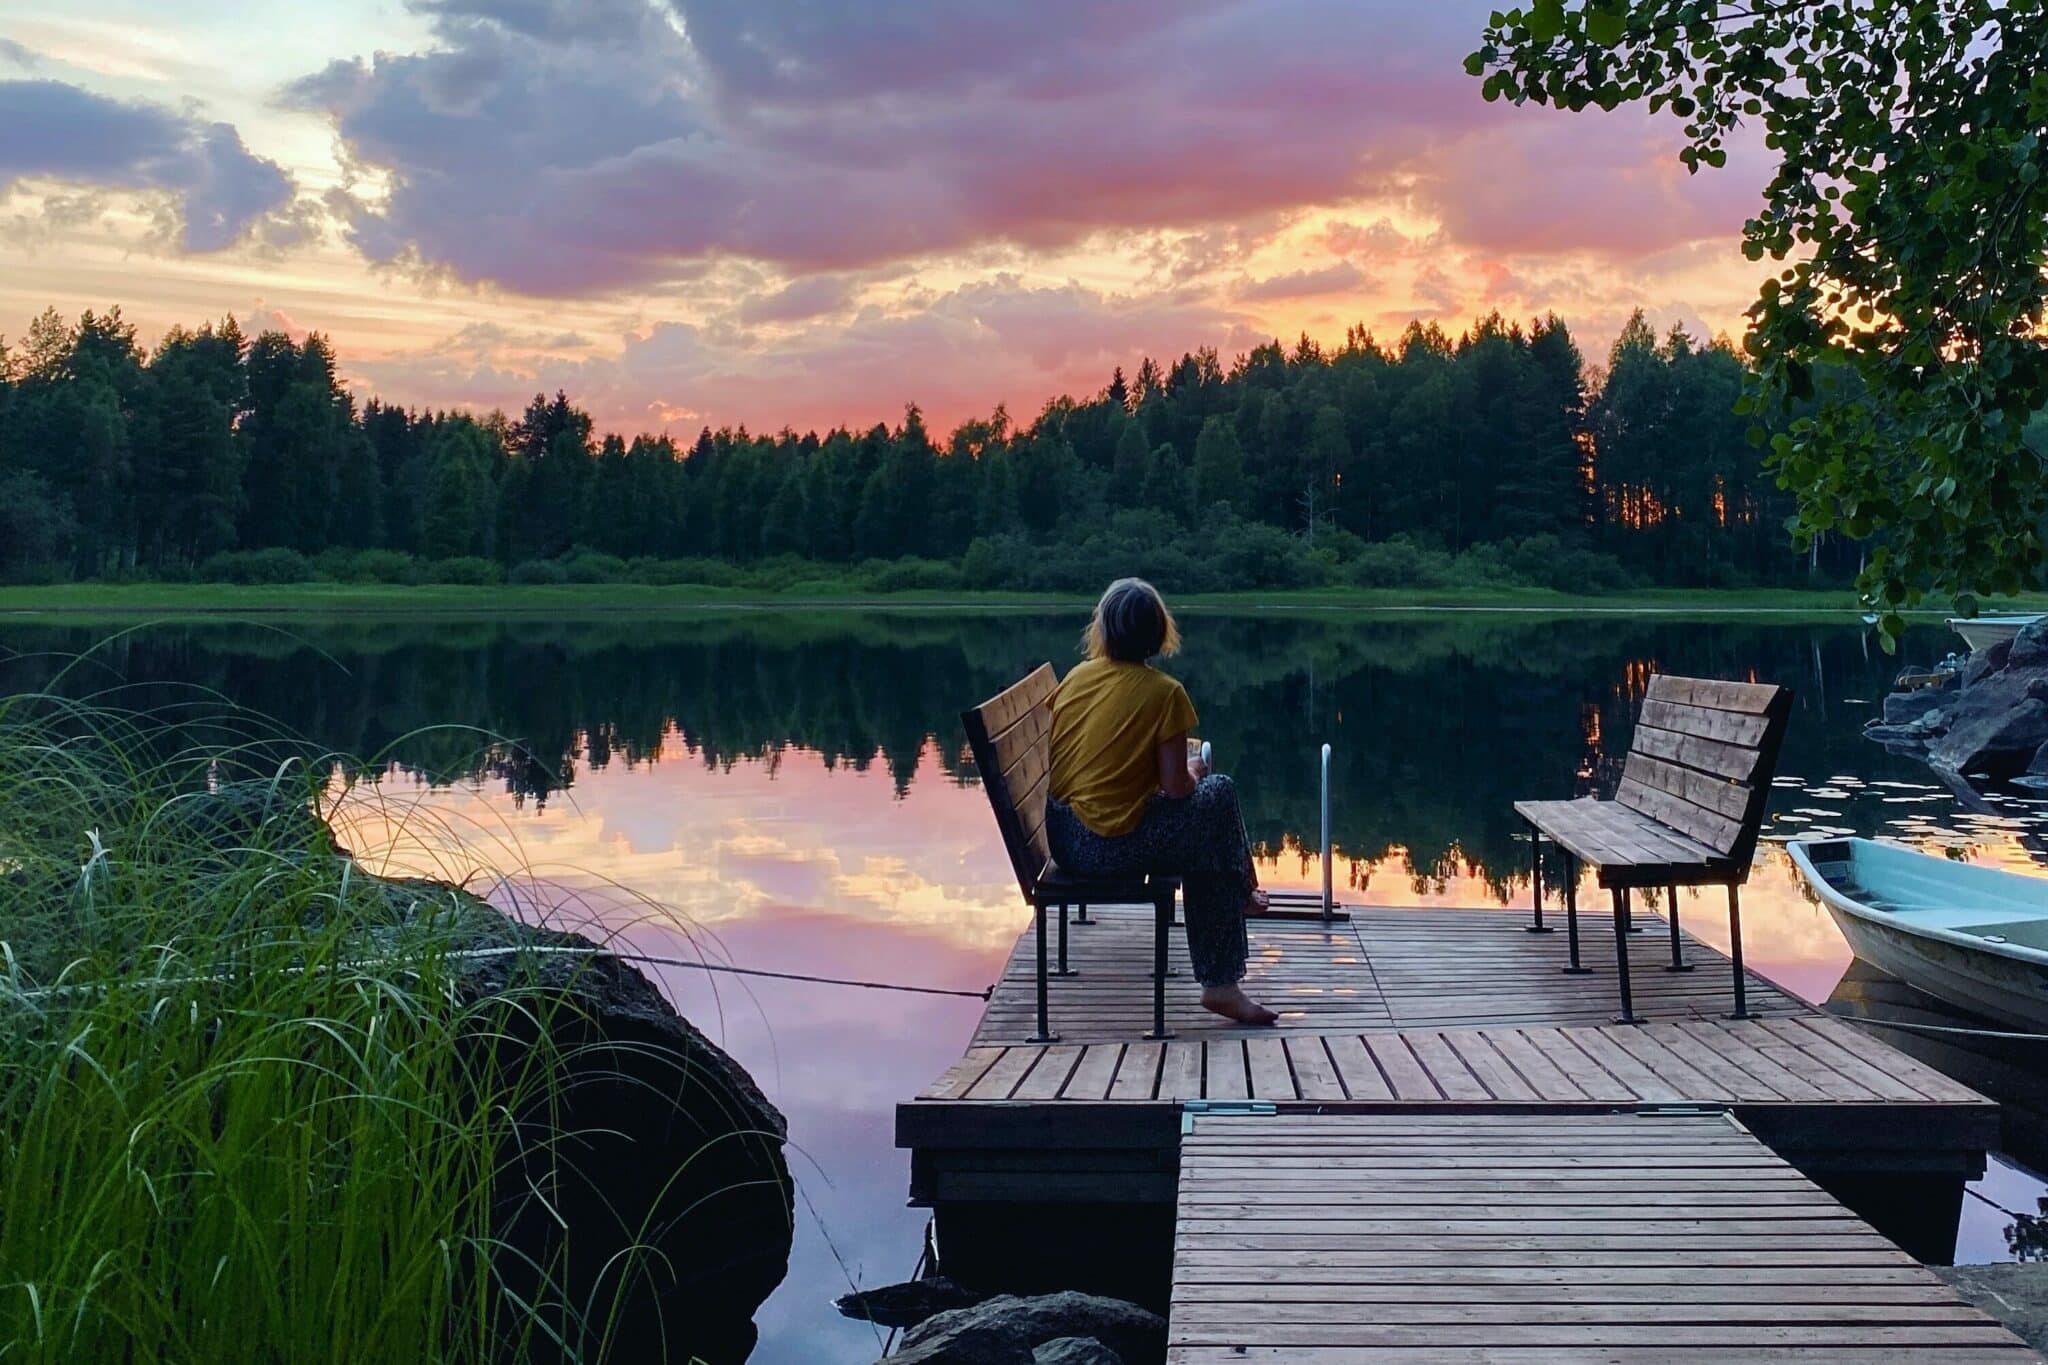 Bilden visar en kvinna som sitter på en bänk på en brygga. I bakgrunden ser man en sjö och ovanför den en rosafärgad solnedgång.